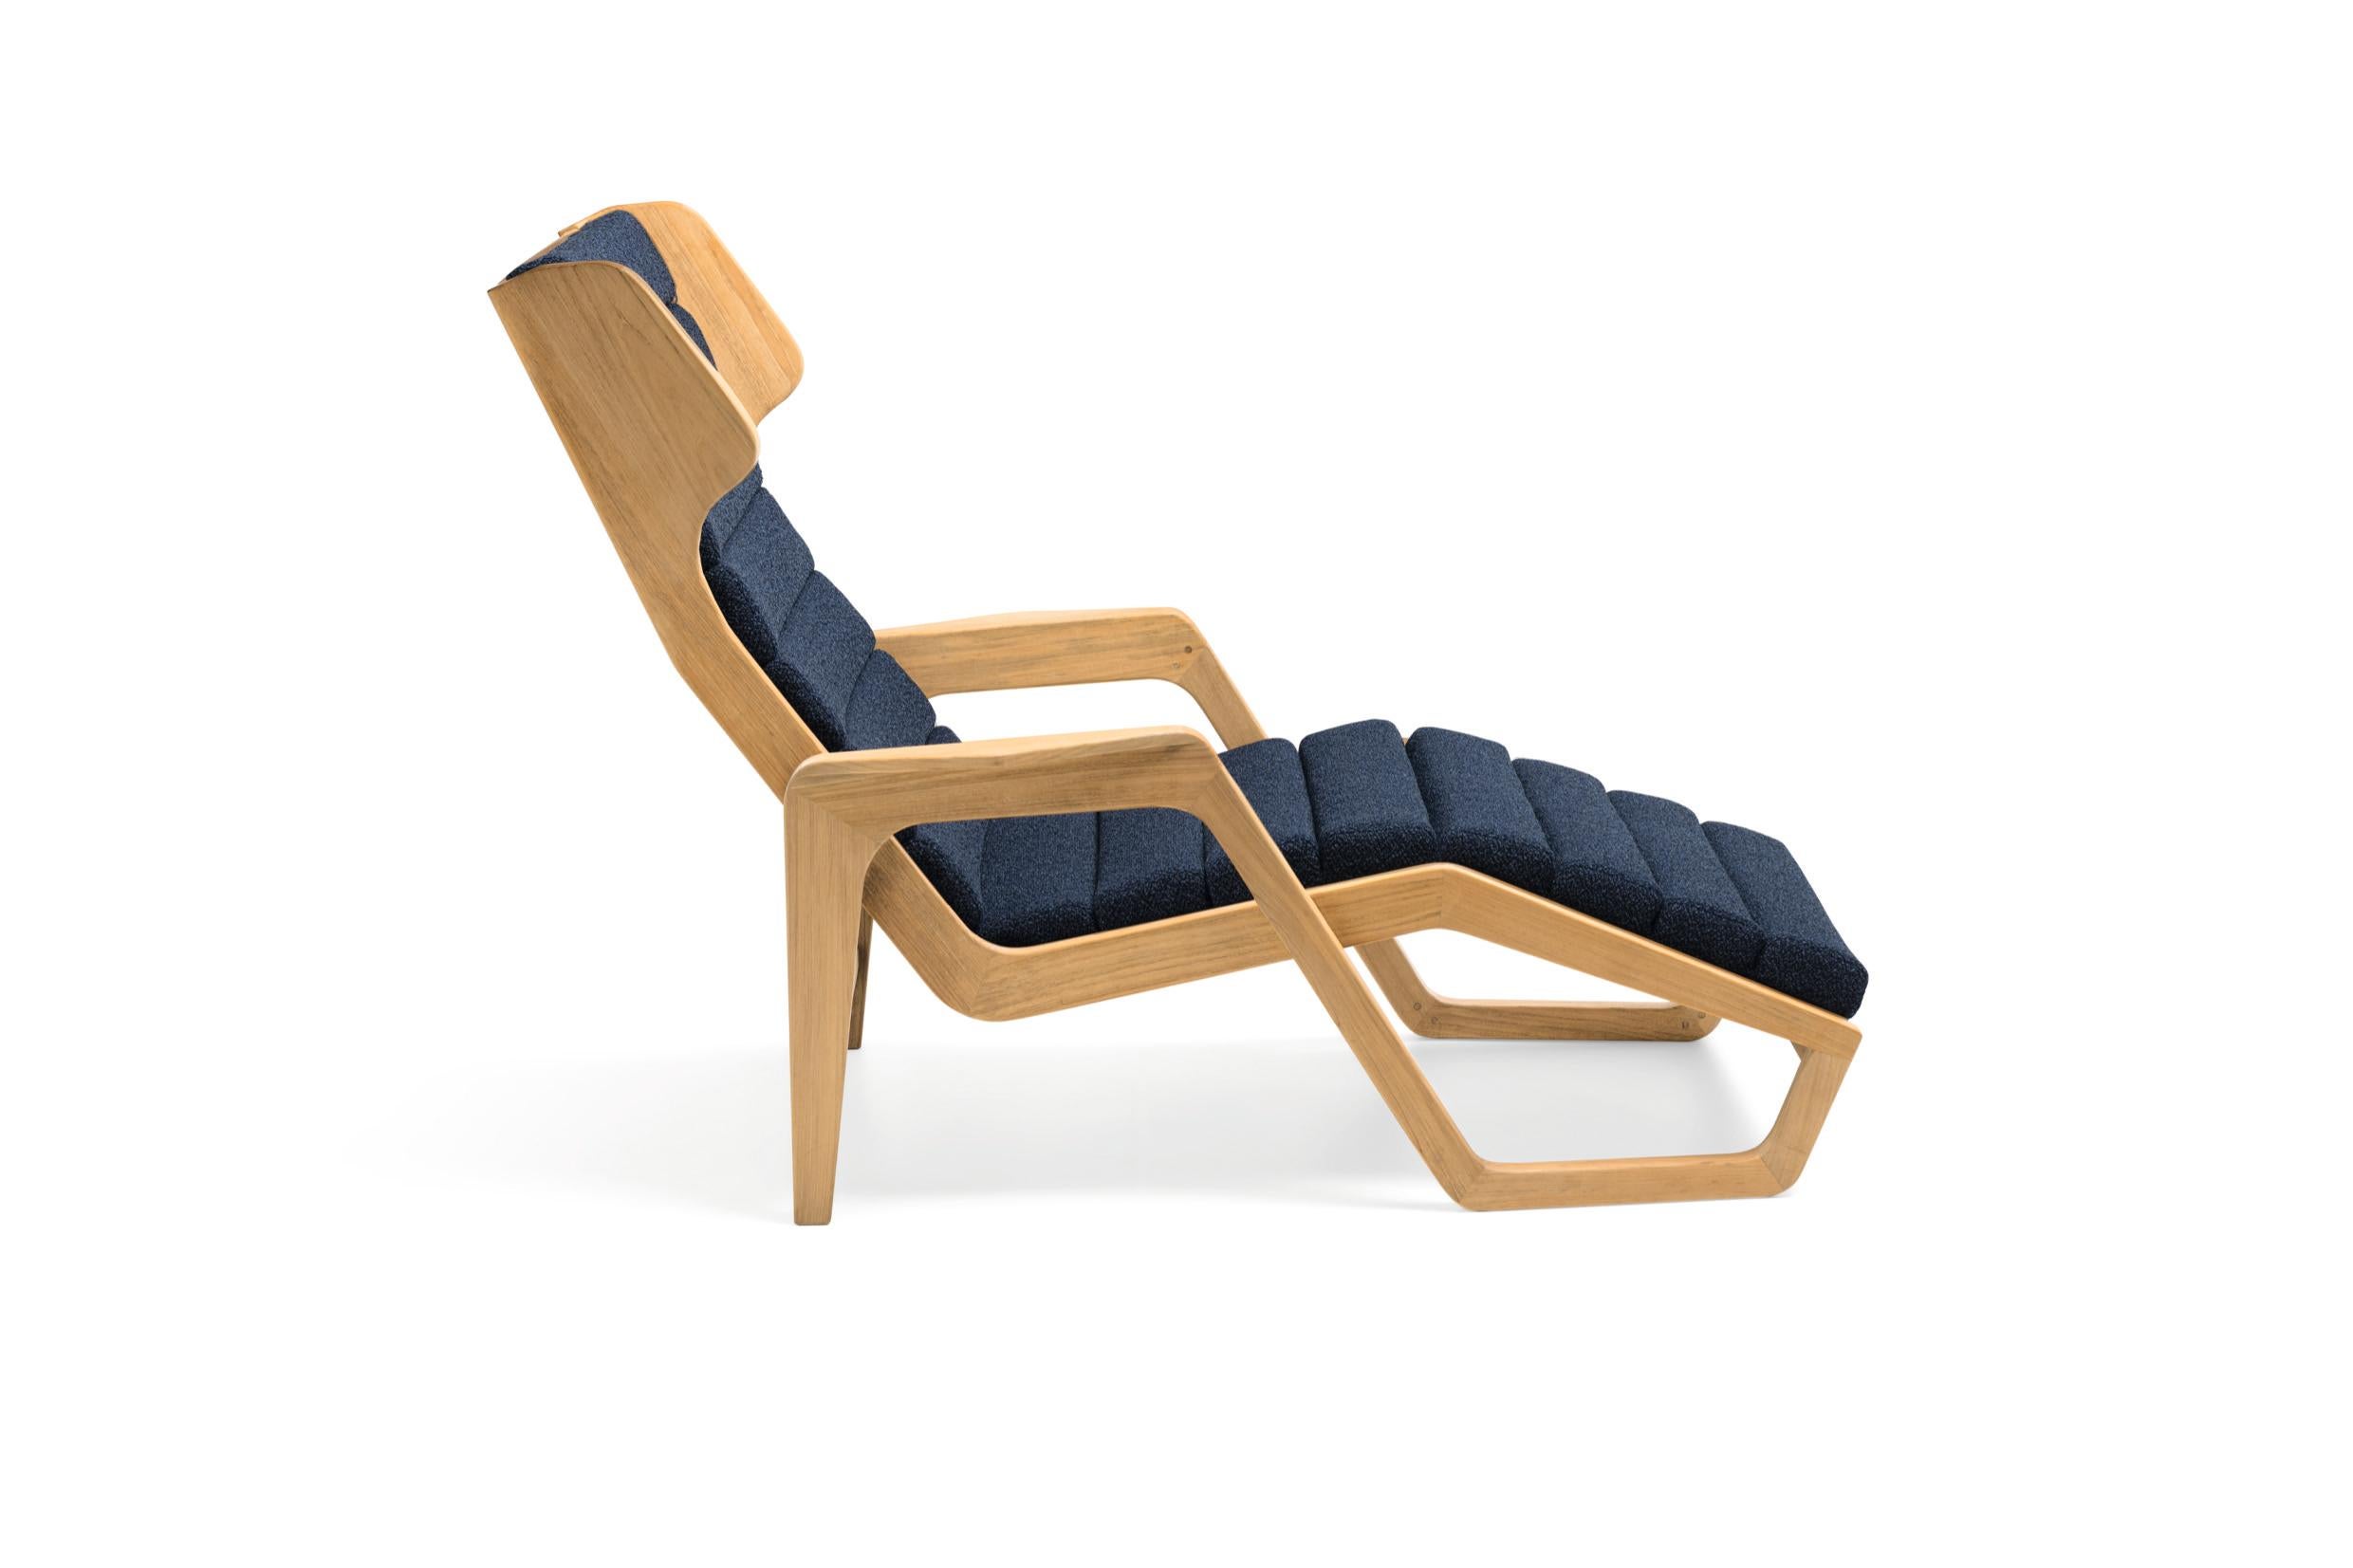 Fauteuil d'extérieur en bois massif Molteni&C by Giò Ponti Design D.150.5
La chaise longue en bois massif D.150.5, conçue par Gio Ponti pour le bateau de croisière Andrea Doria en 1952, est de retour. Recréant un design emblématique de Gio Ponti